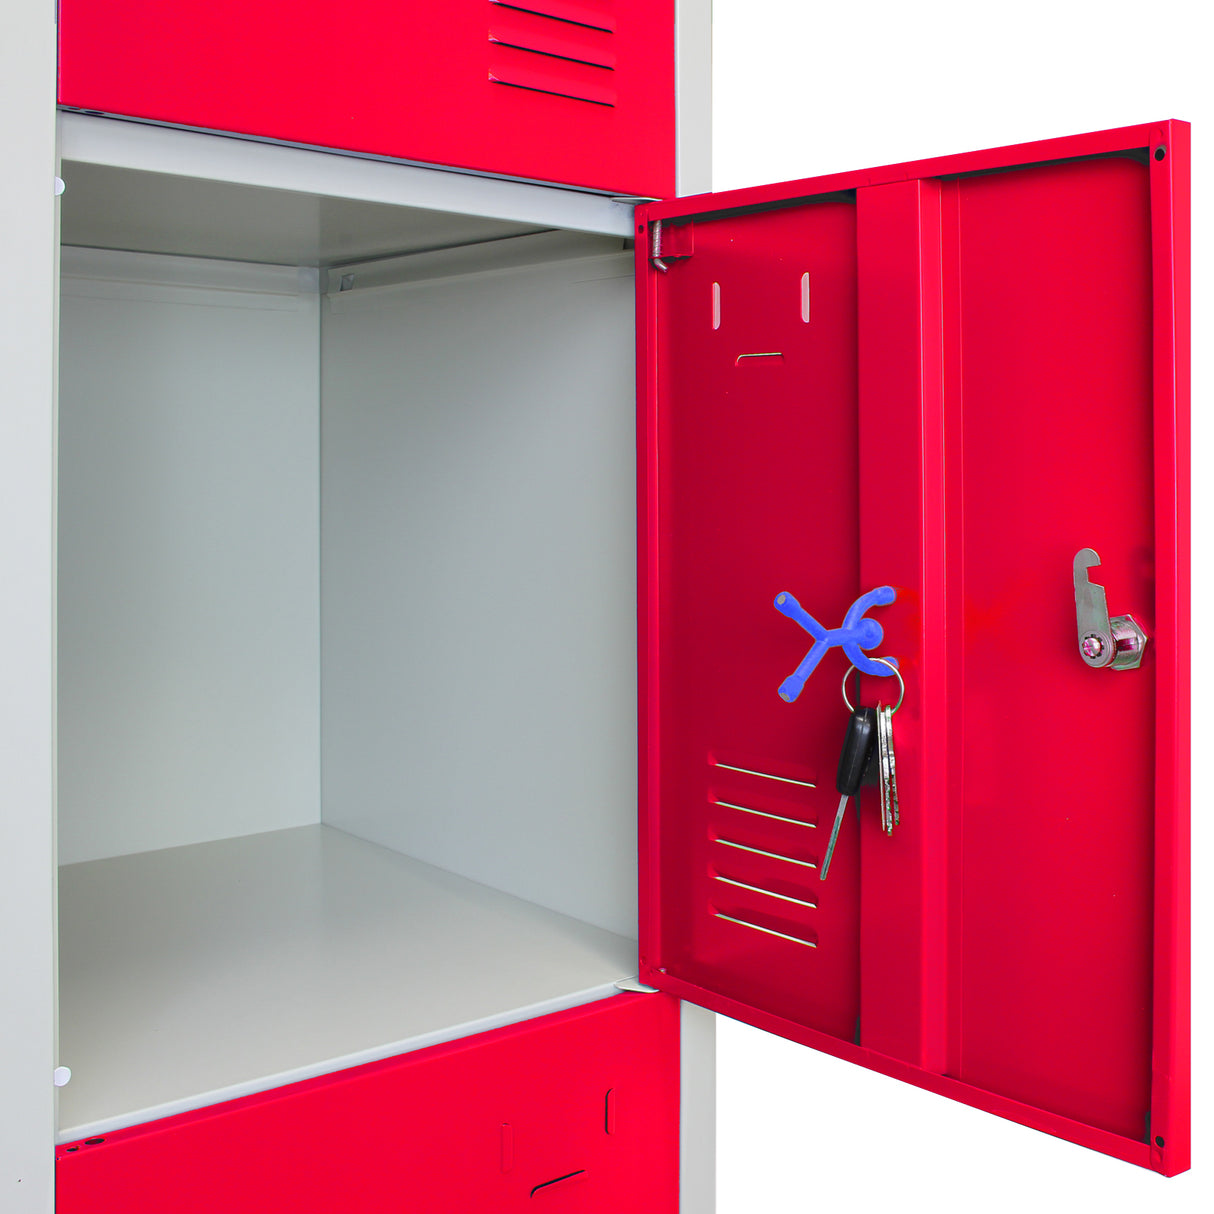 3 x casiers de rangement en métal - Quatre portes, Rouge - A plat